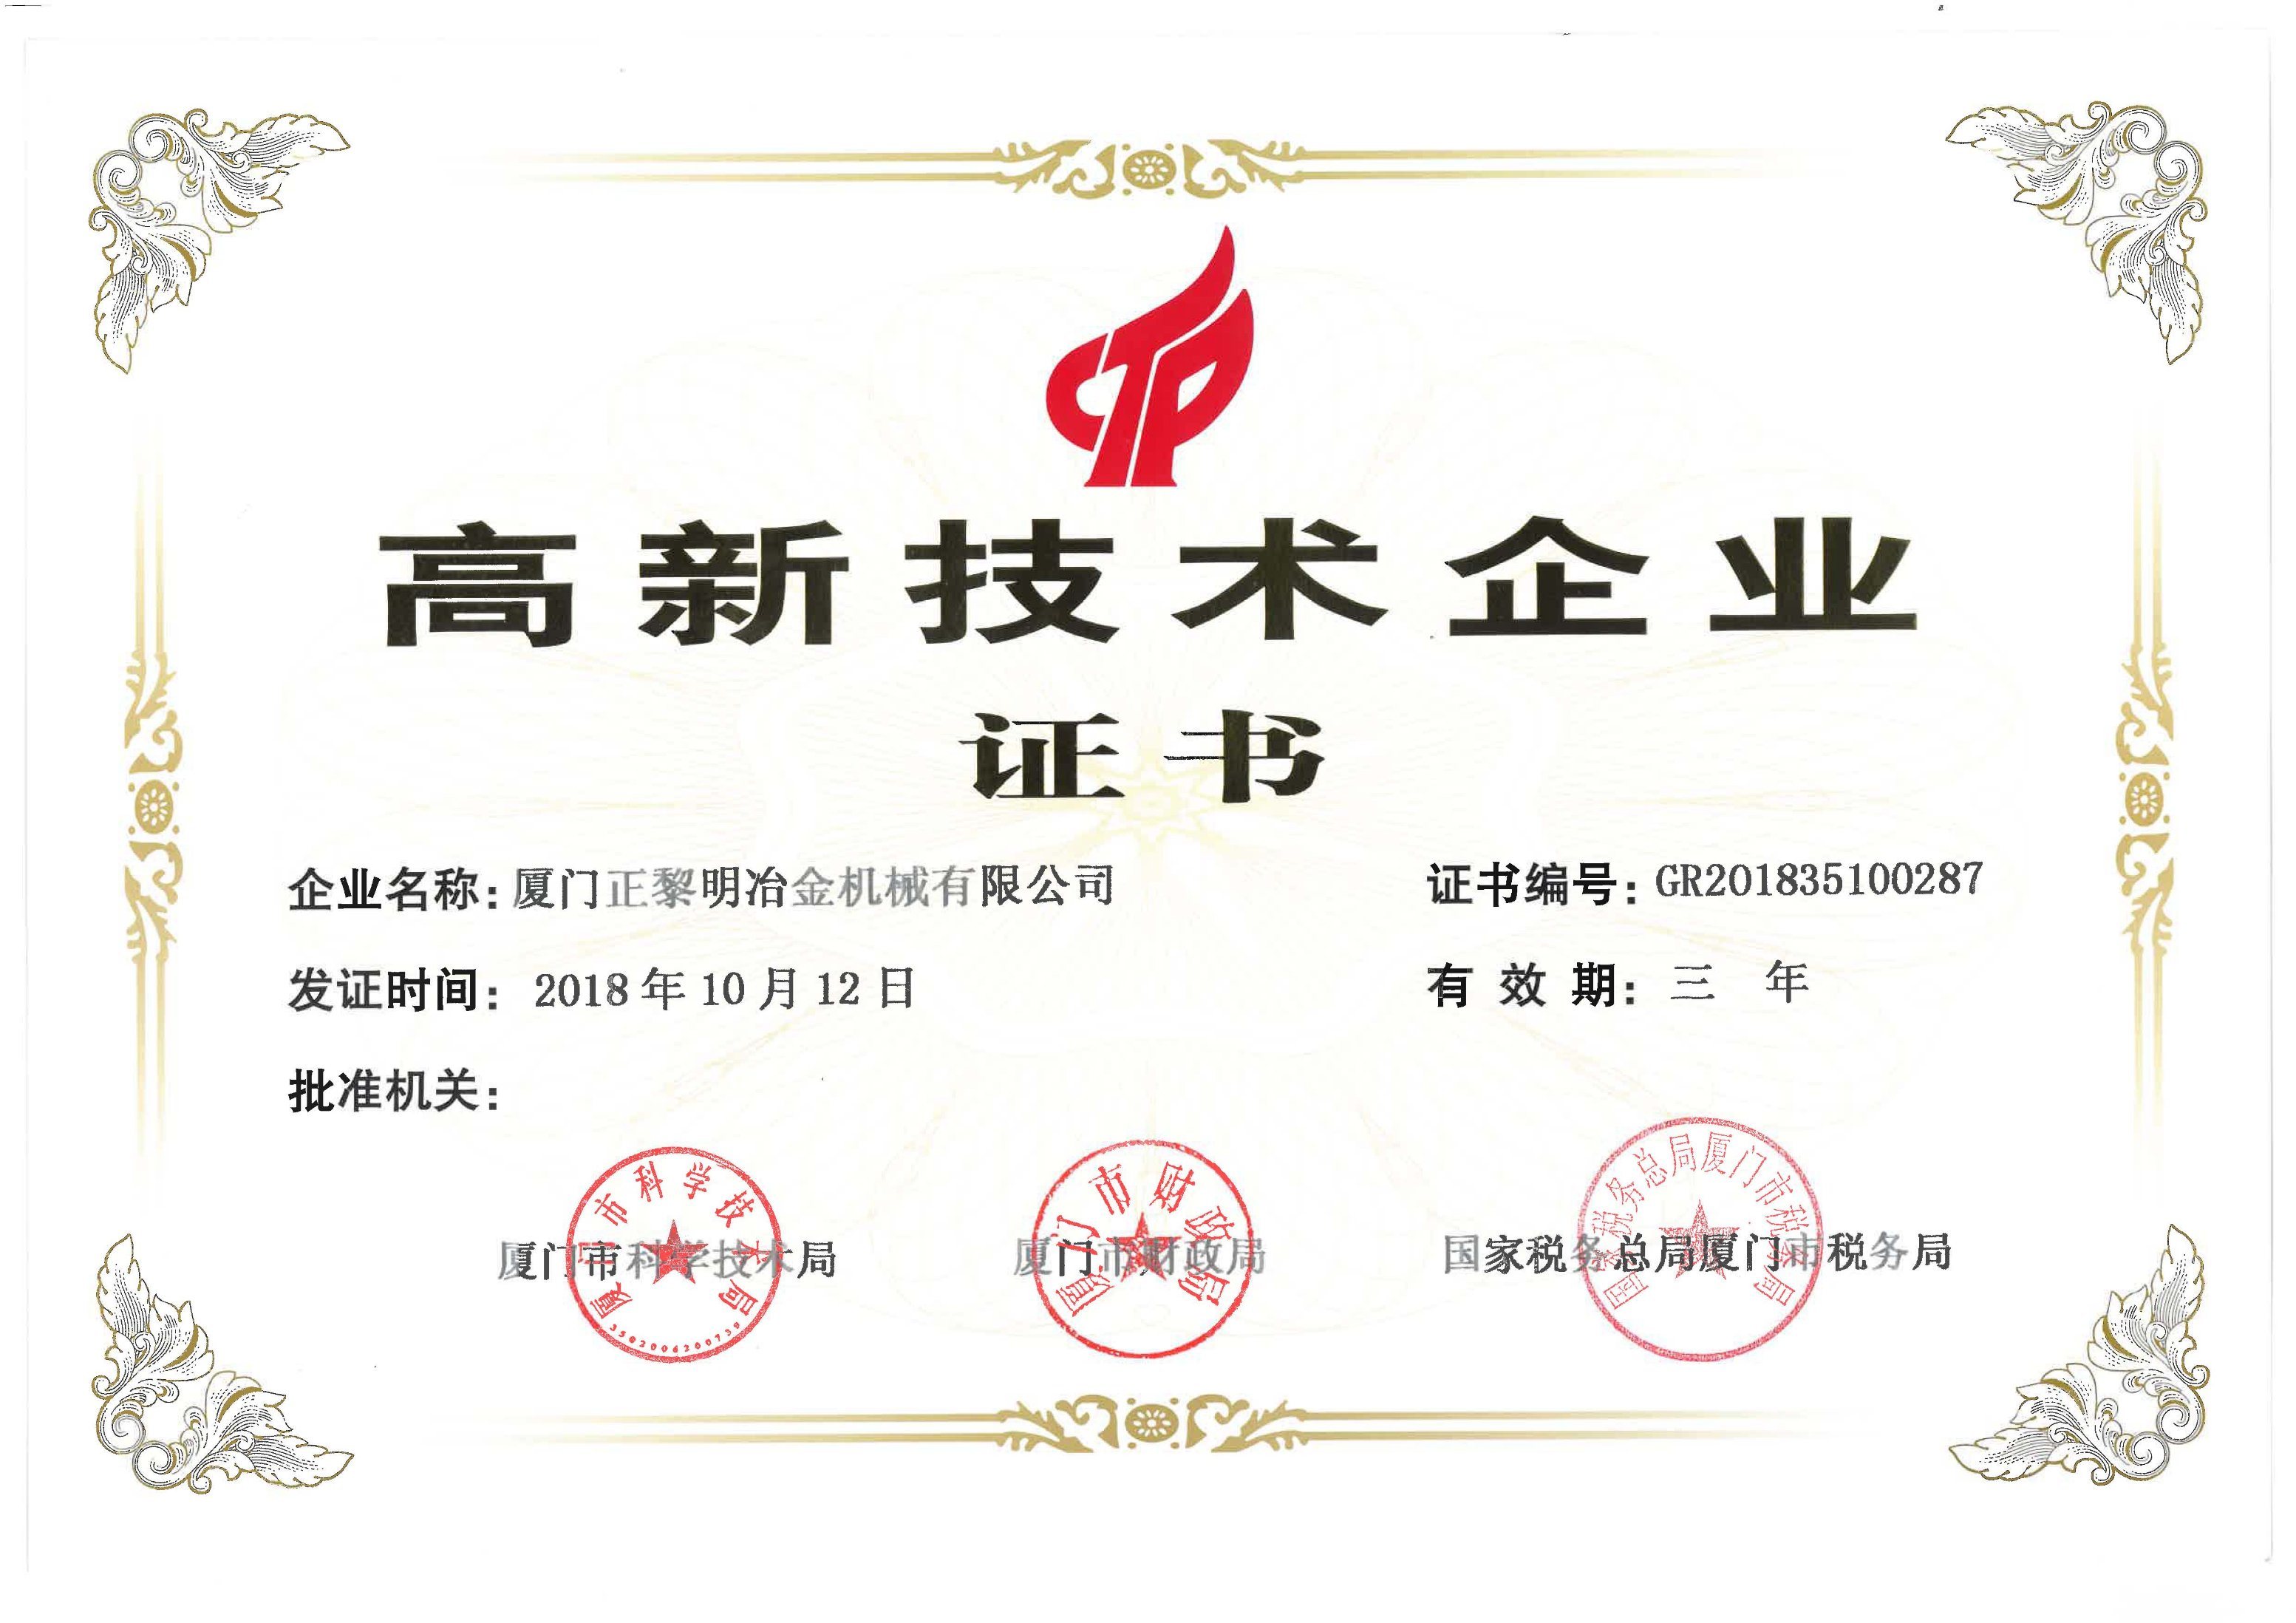 HIgh-tech Enterprise Certificate